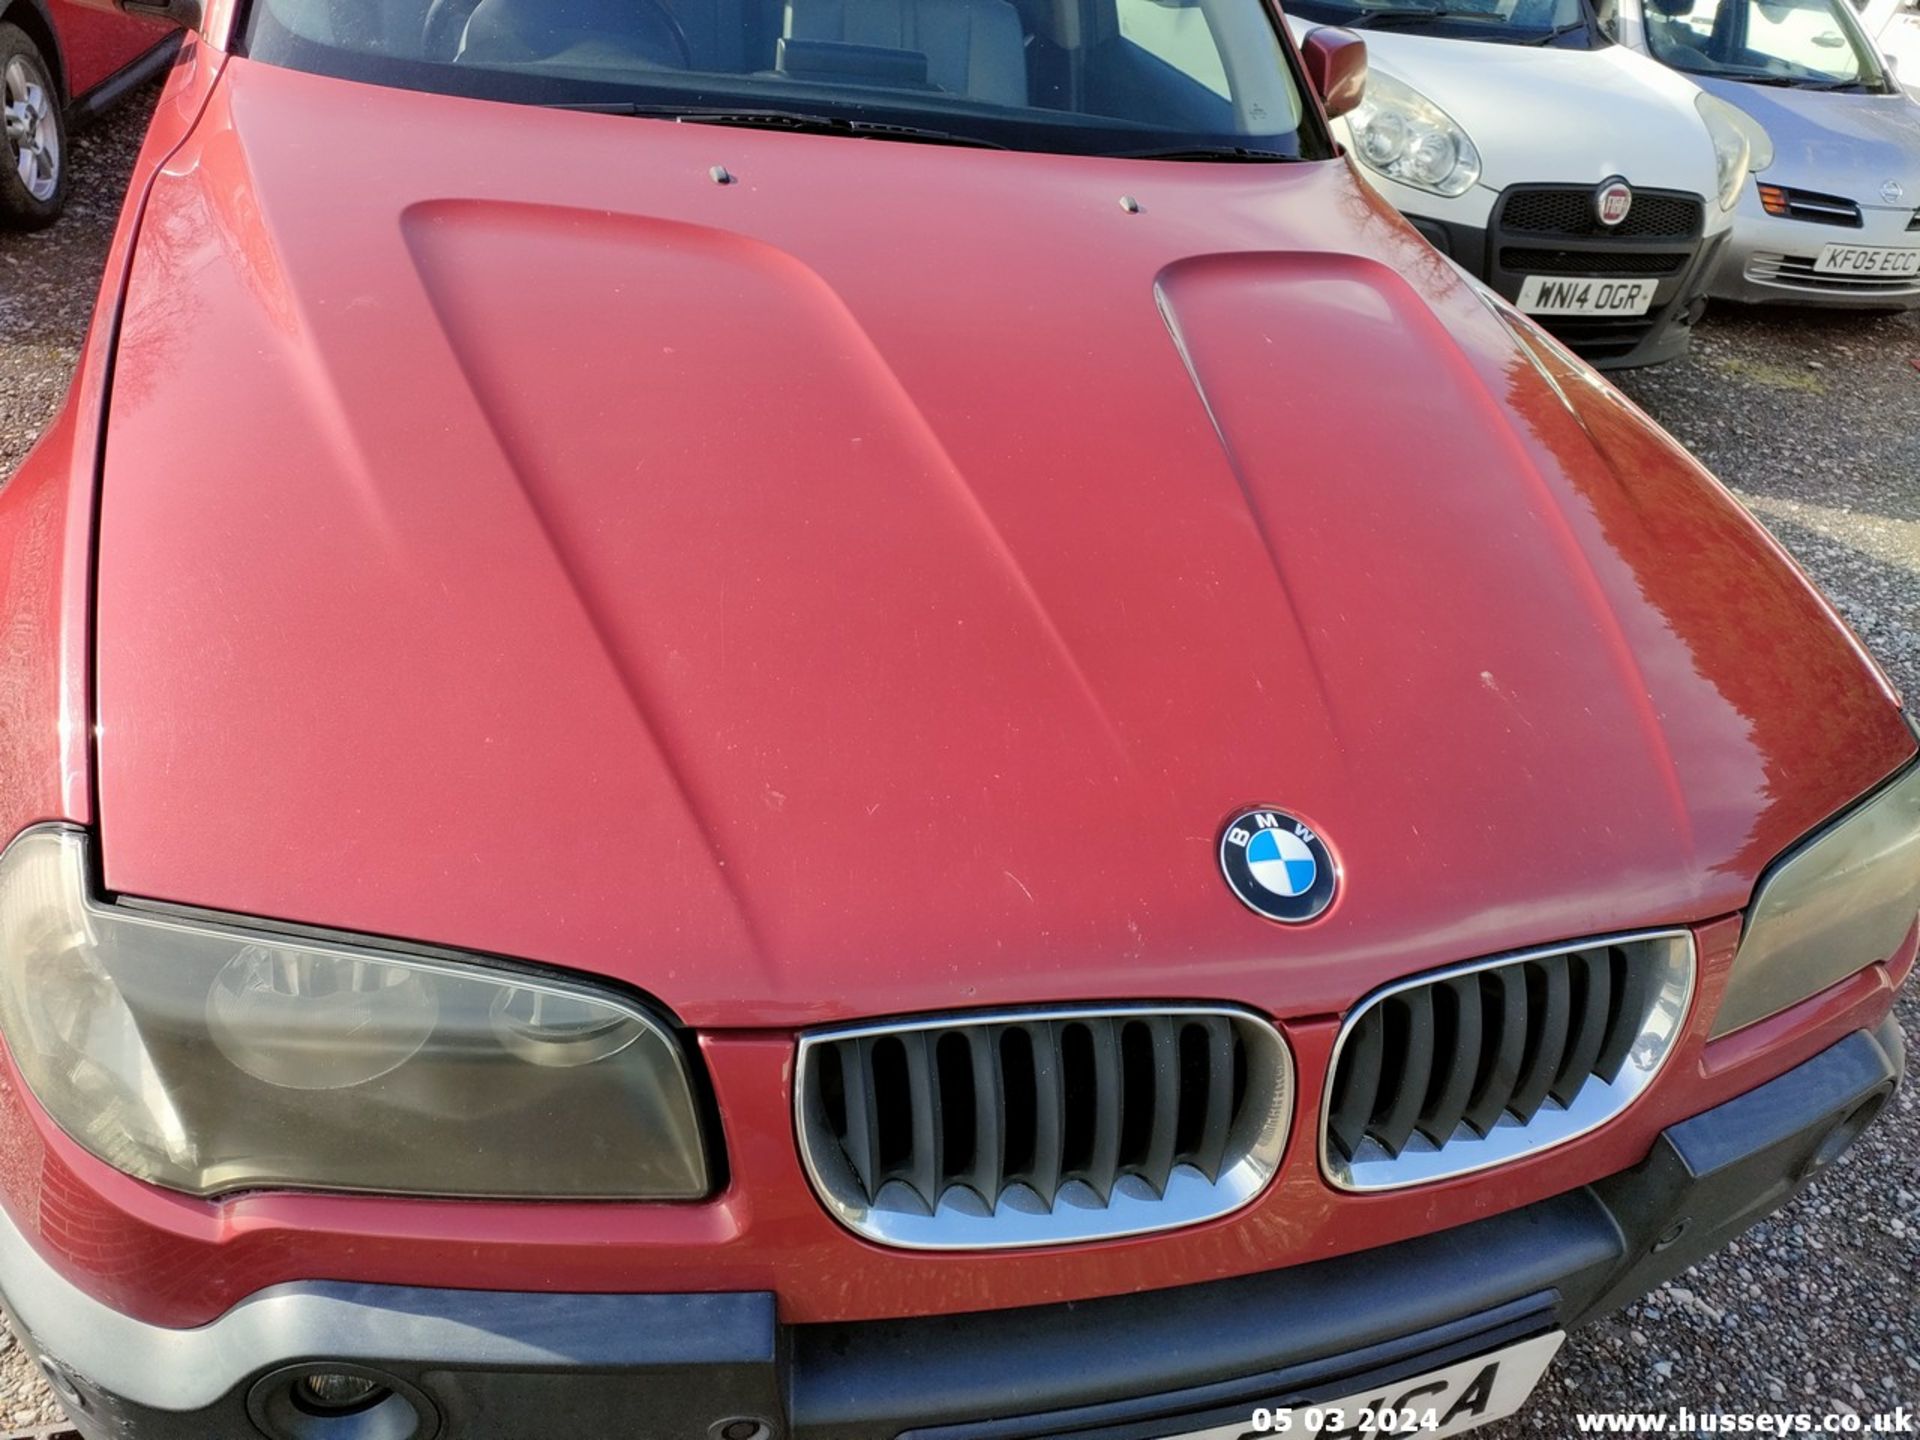 05/55 BMW X3 D SE - 1995cc 5dr Estate (Red, 188k) - Image 9 of 51